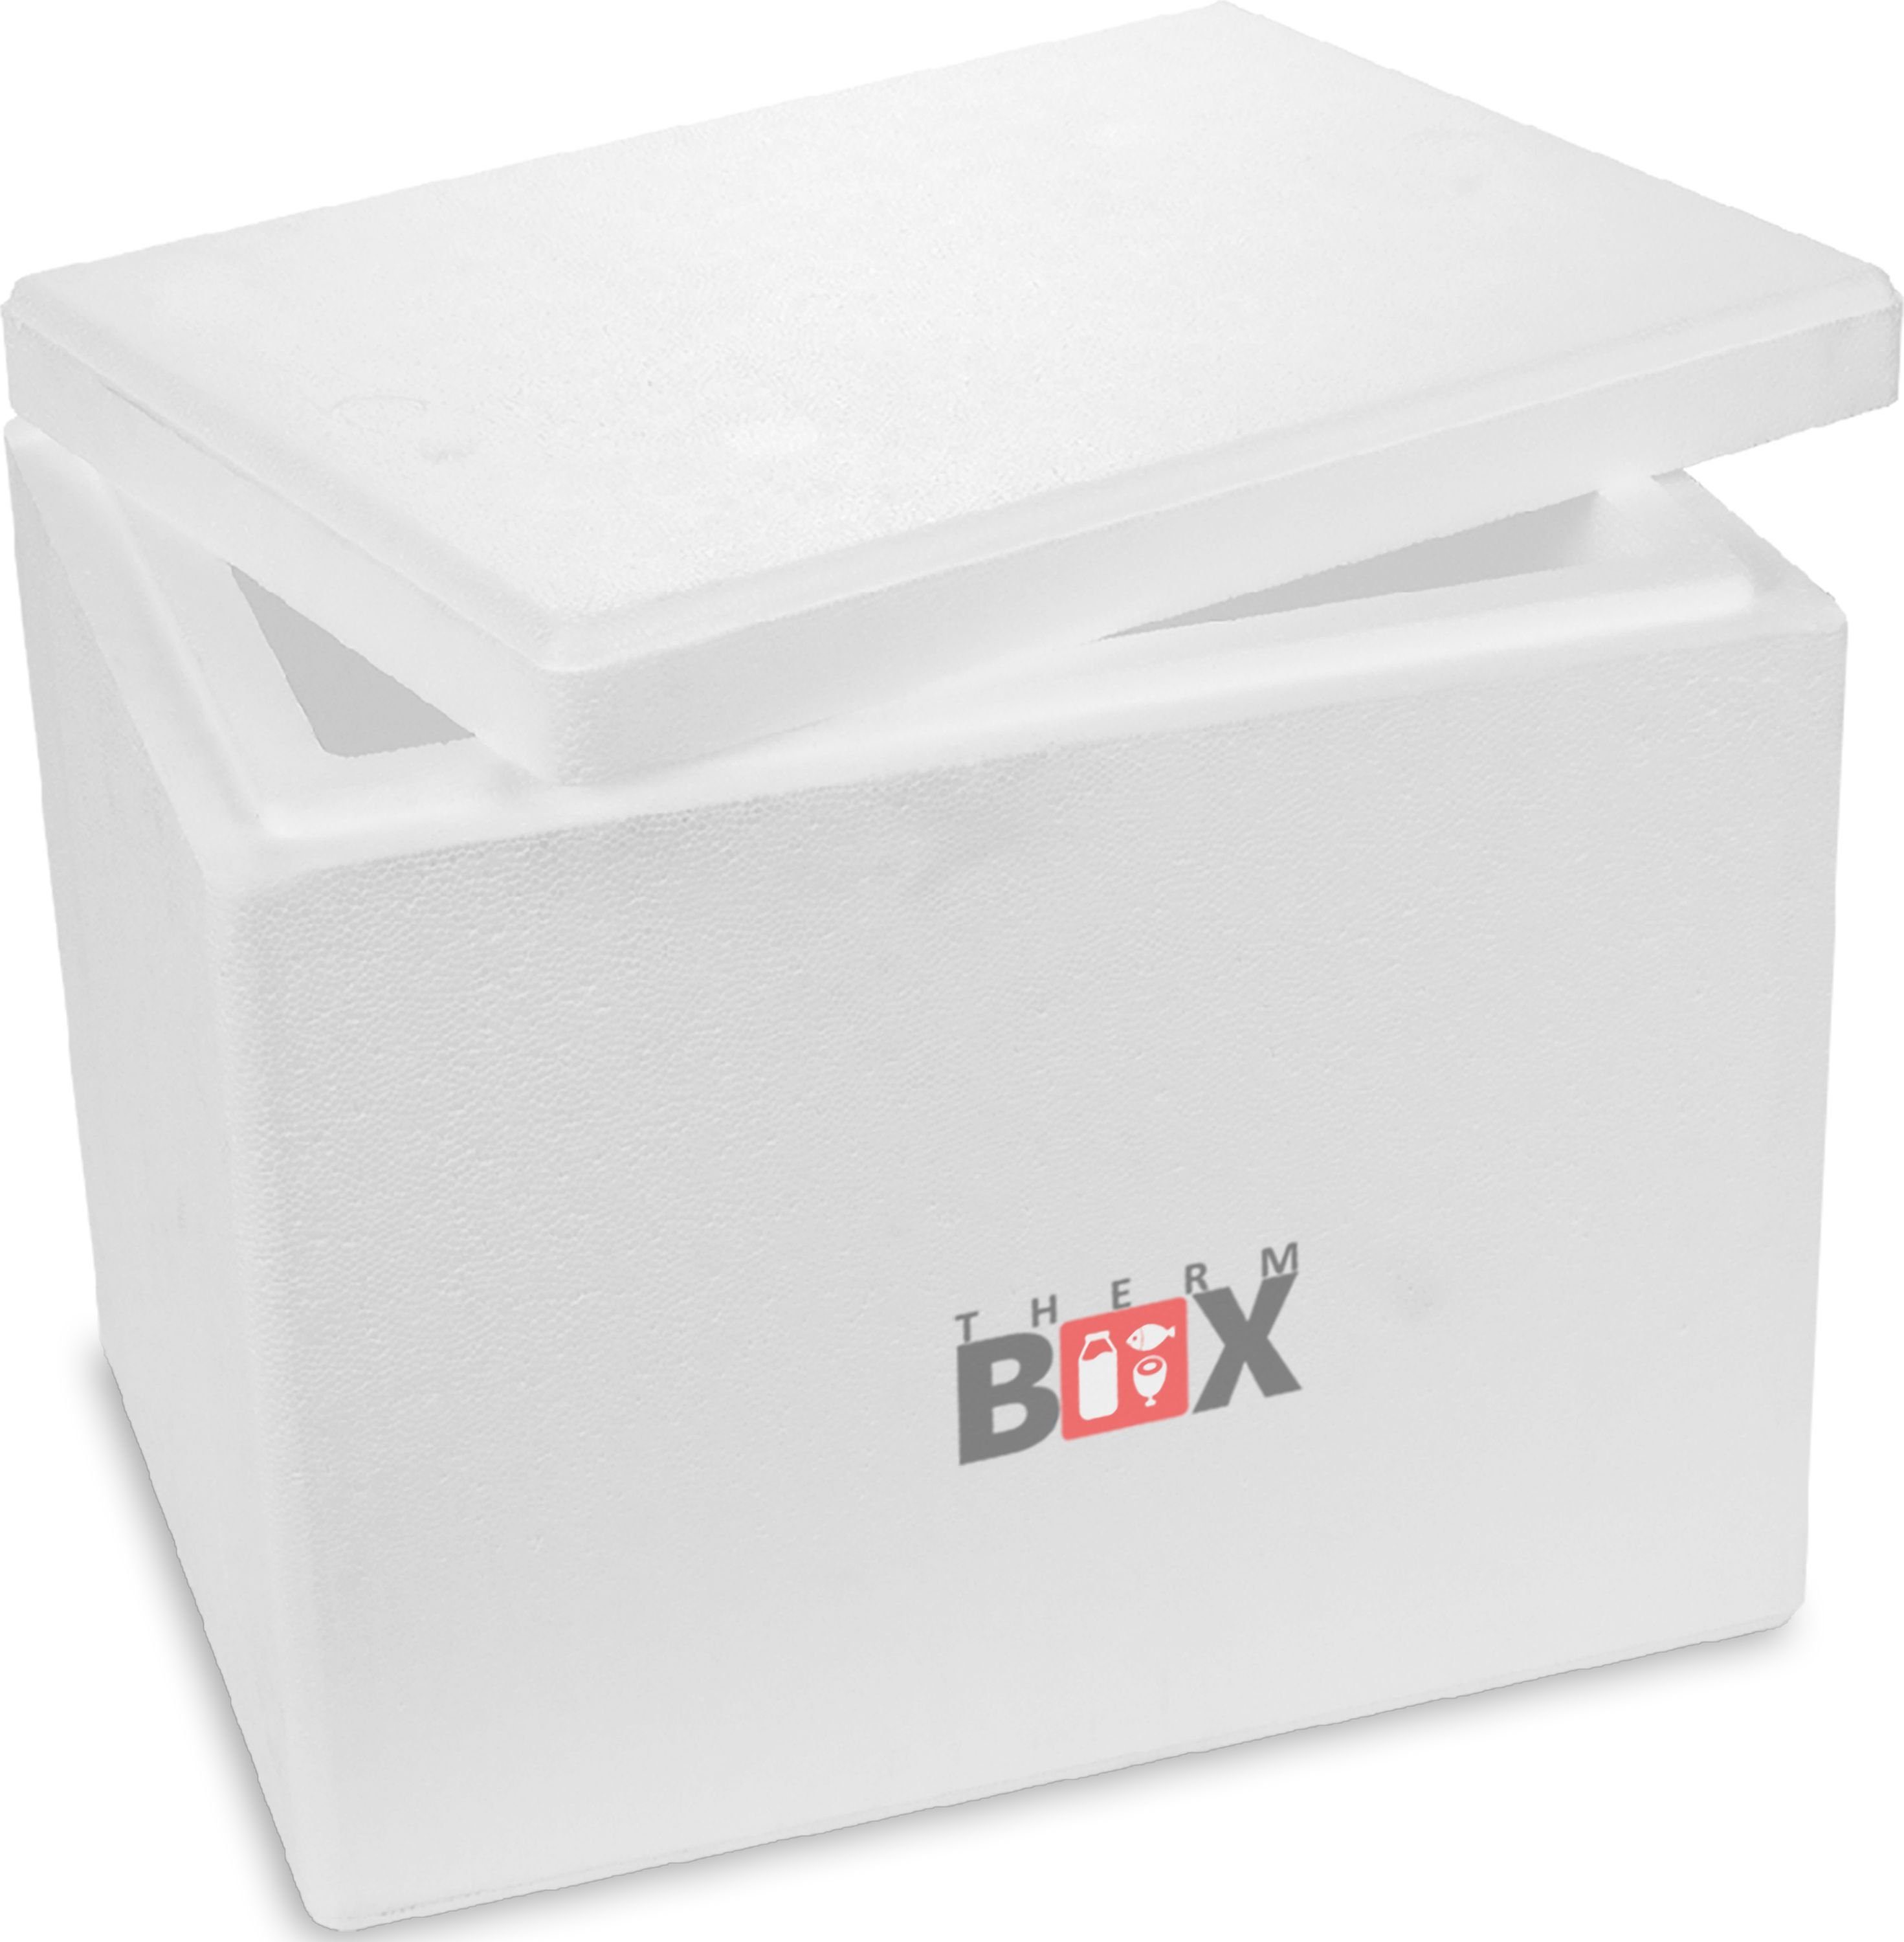 THERM-BOX Thermobehälter Styroporbox 27W Innen: 37x26x29cm Wand: 4cm 27,9 Liter, Styropor-Verdichtet, (1, 0-tlg., Box mit Deckel im Karton), Isolierbox Thermobox Kühlbox Warmhaltebox Wiederverwendbar